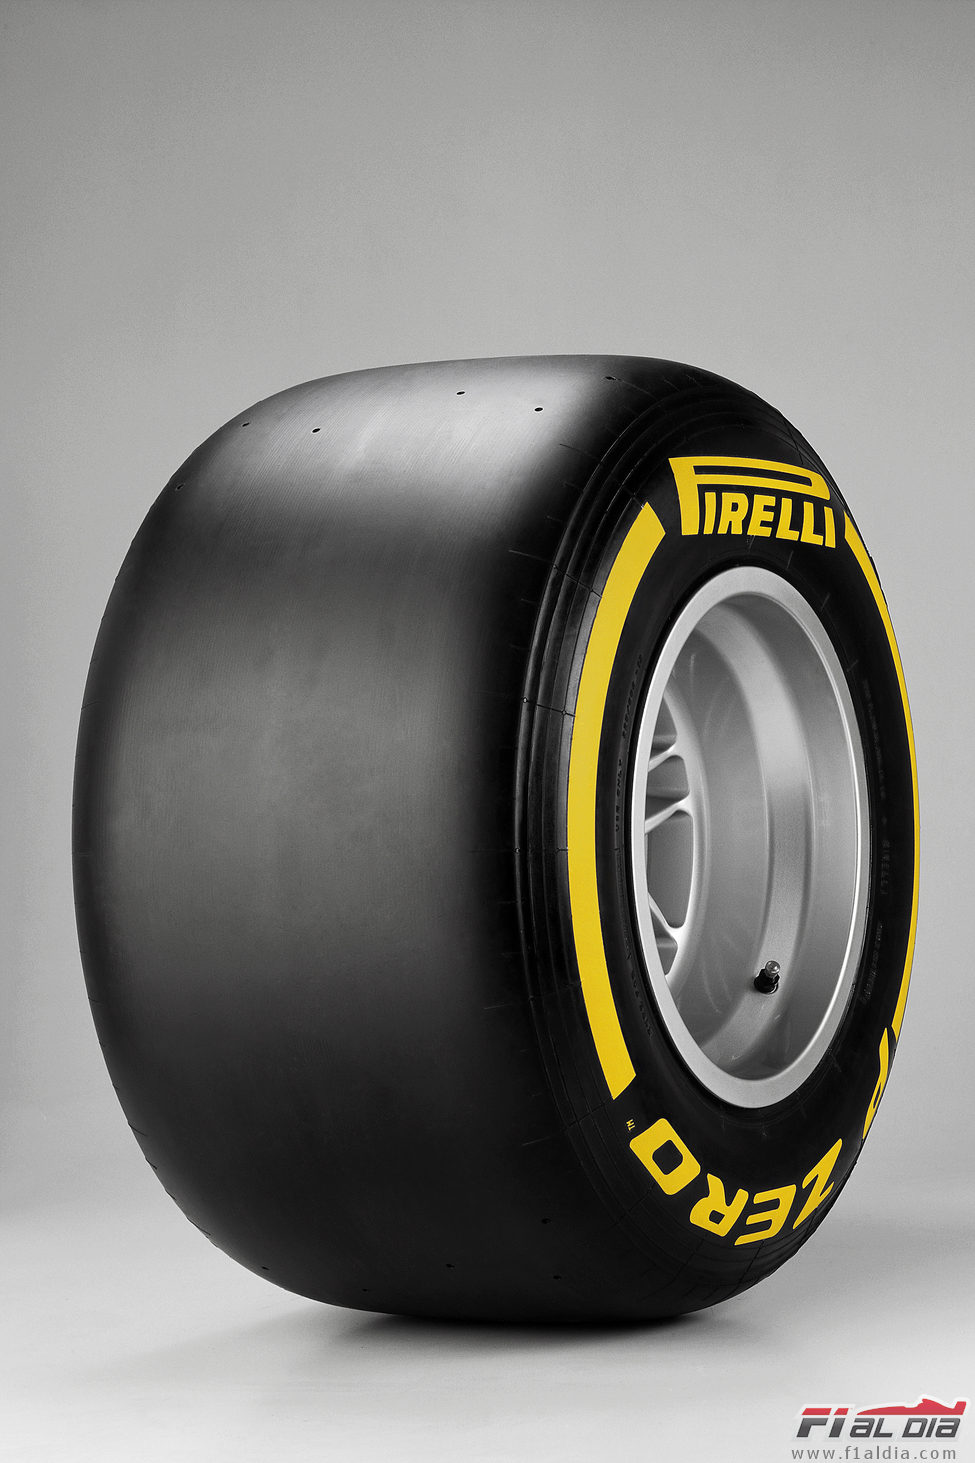 Pirelli 2012: blando (lateral)